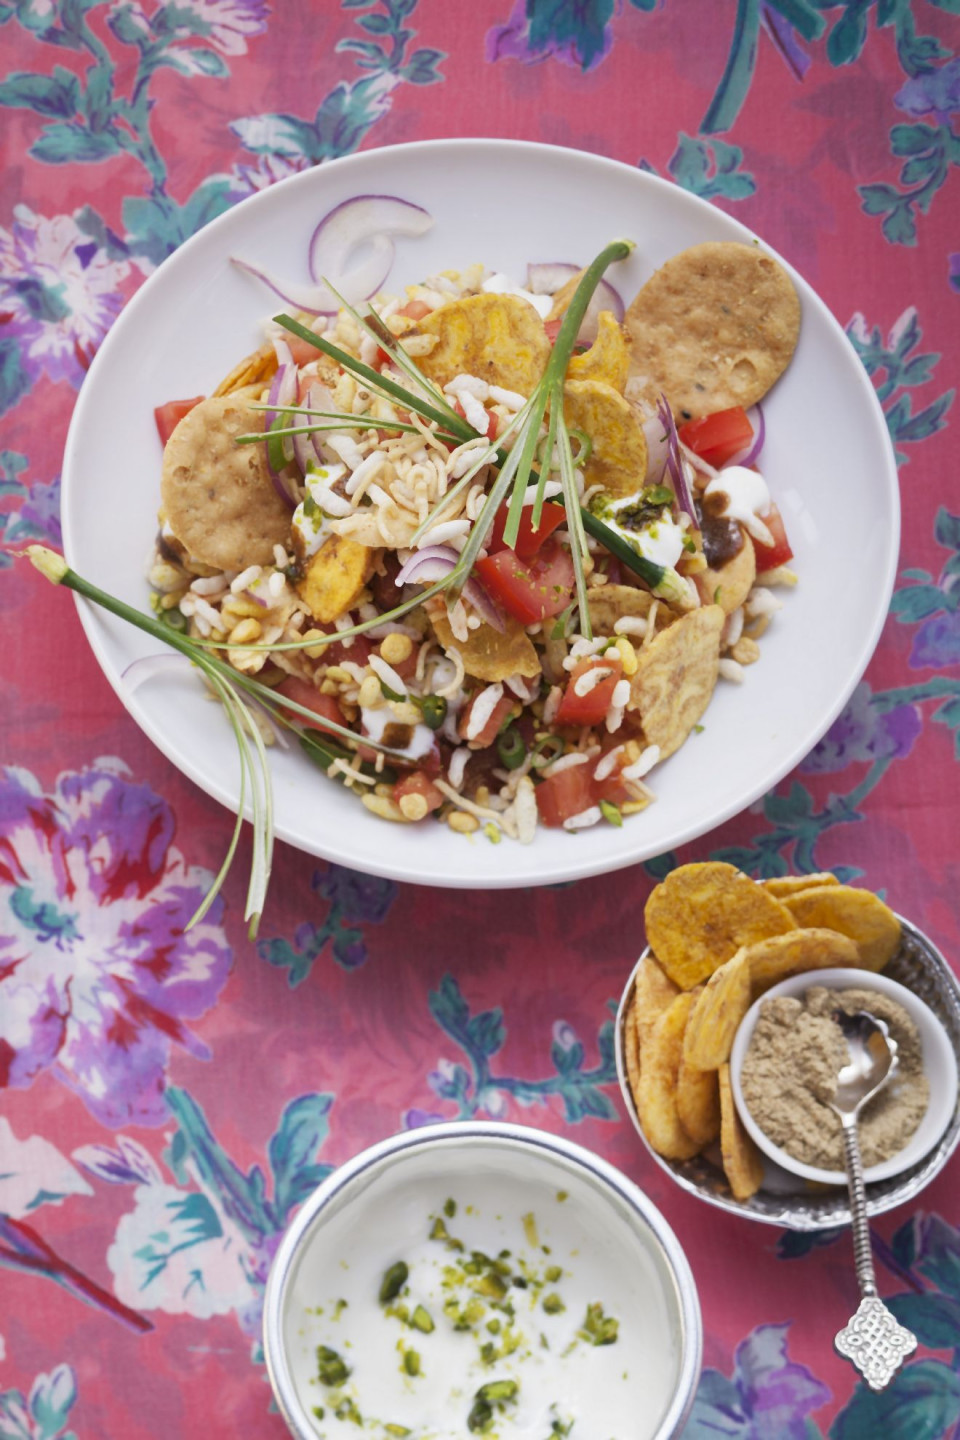 Bio Indischer Salat mit Puffreis, Plain Sev, Tamarindenchutney und Maida-Keksen